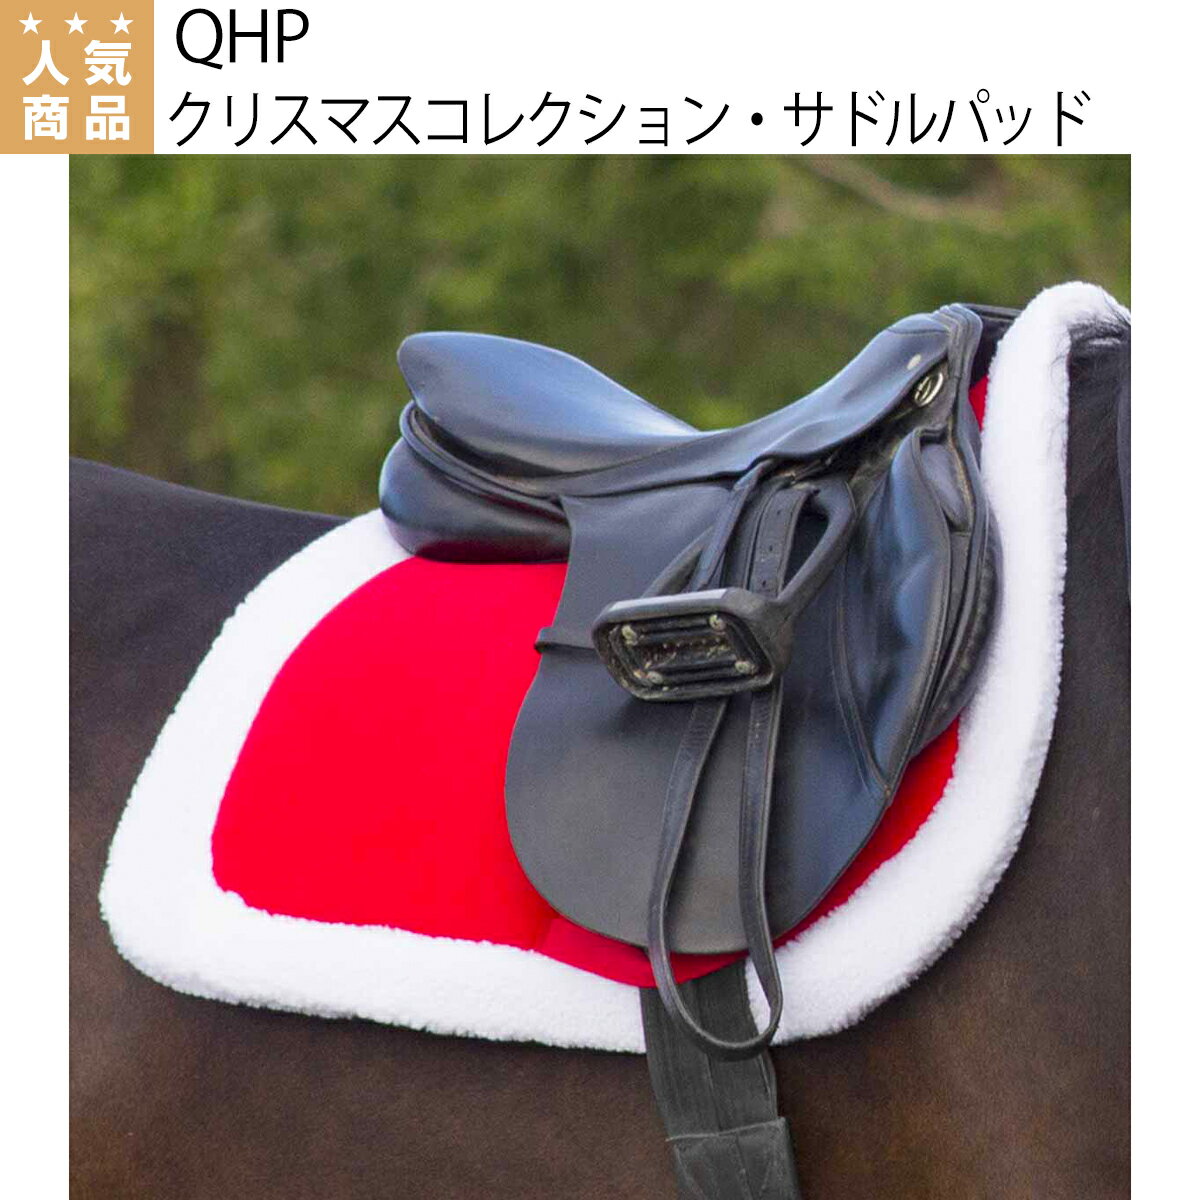 乗馬 ゼッケン サドルパッド QHP クリスマスコレクション サドルパッド 乗馬用品 馬具